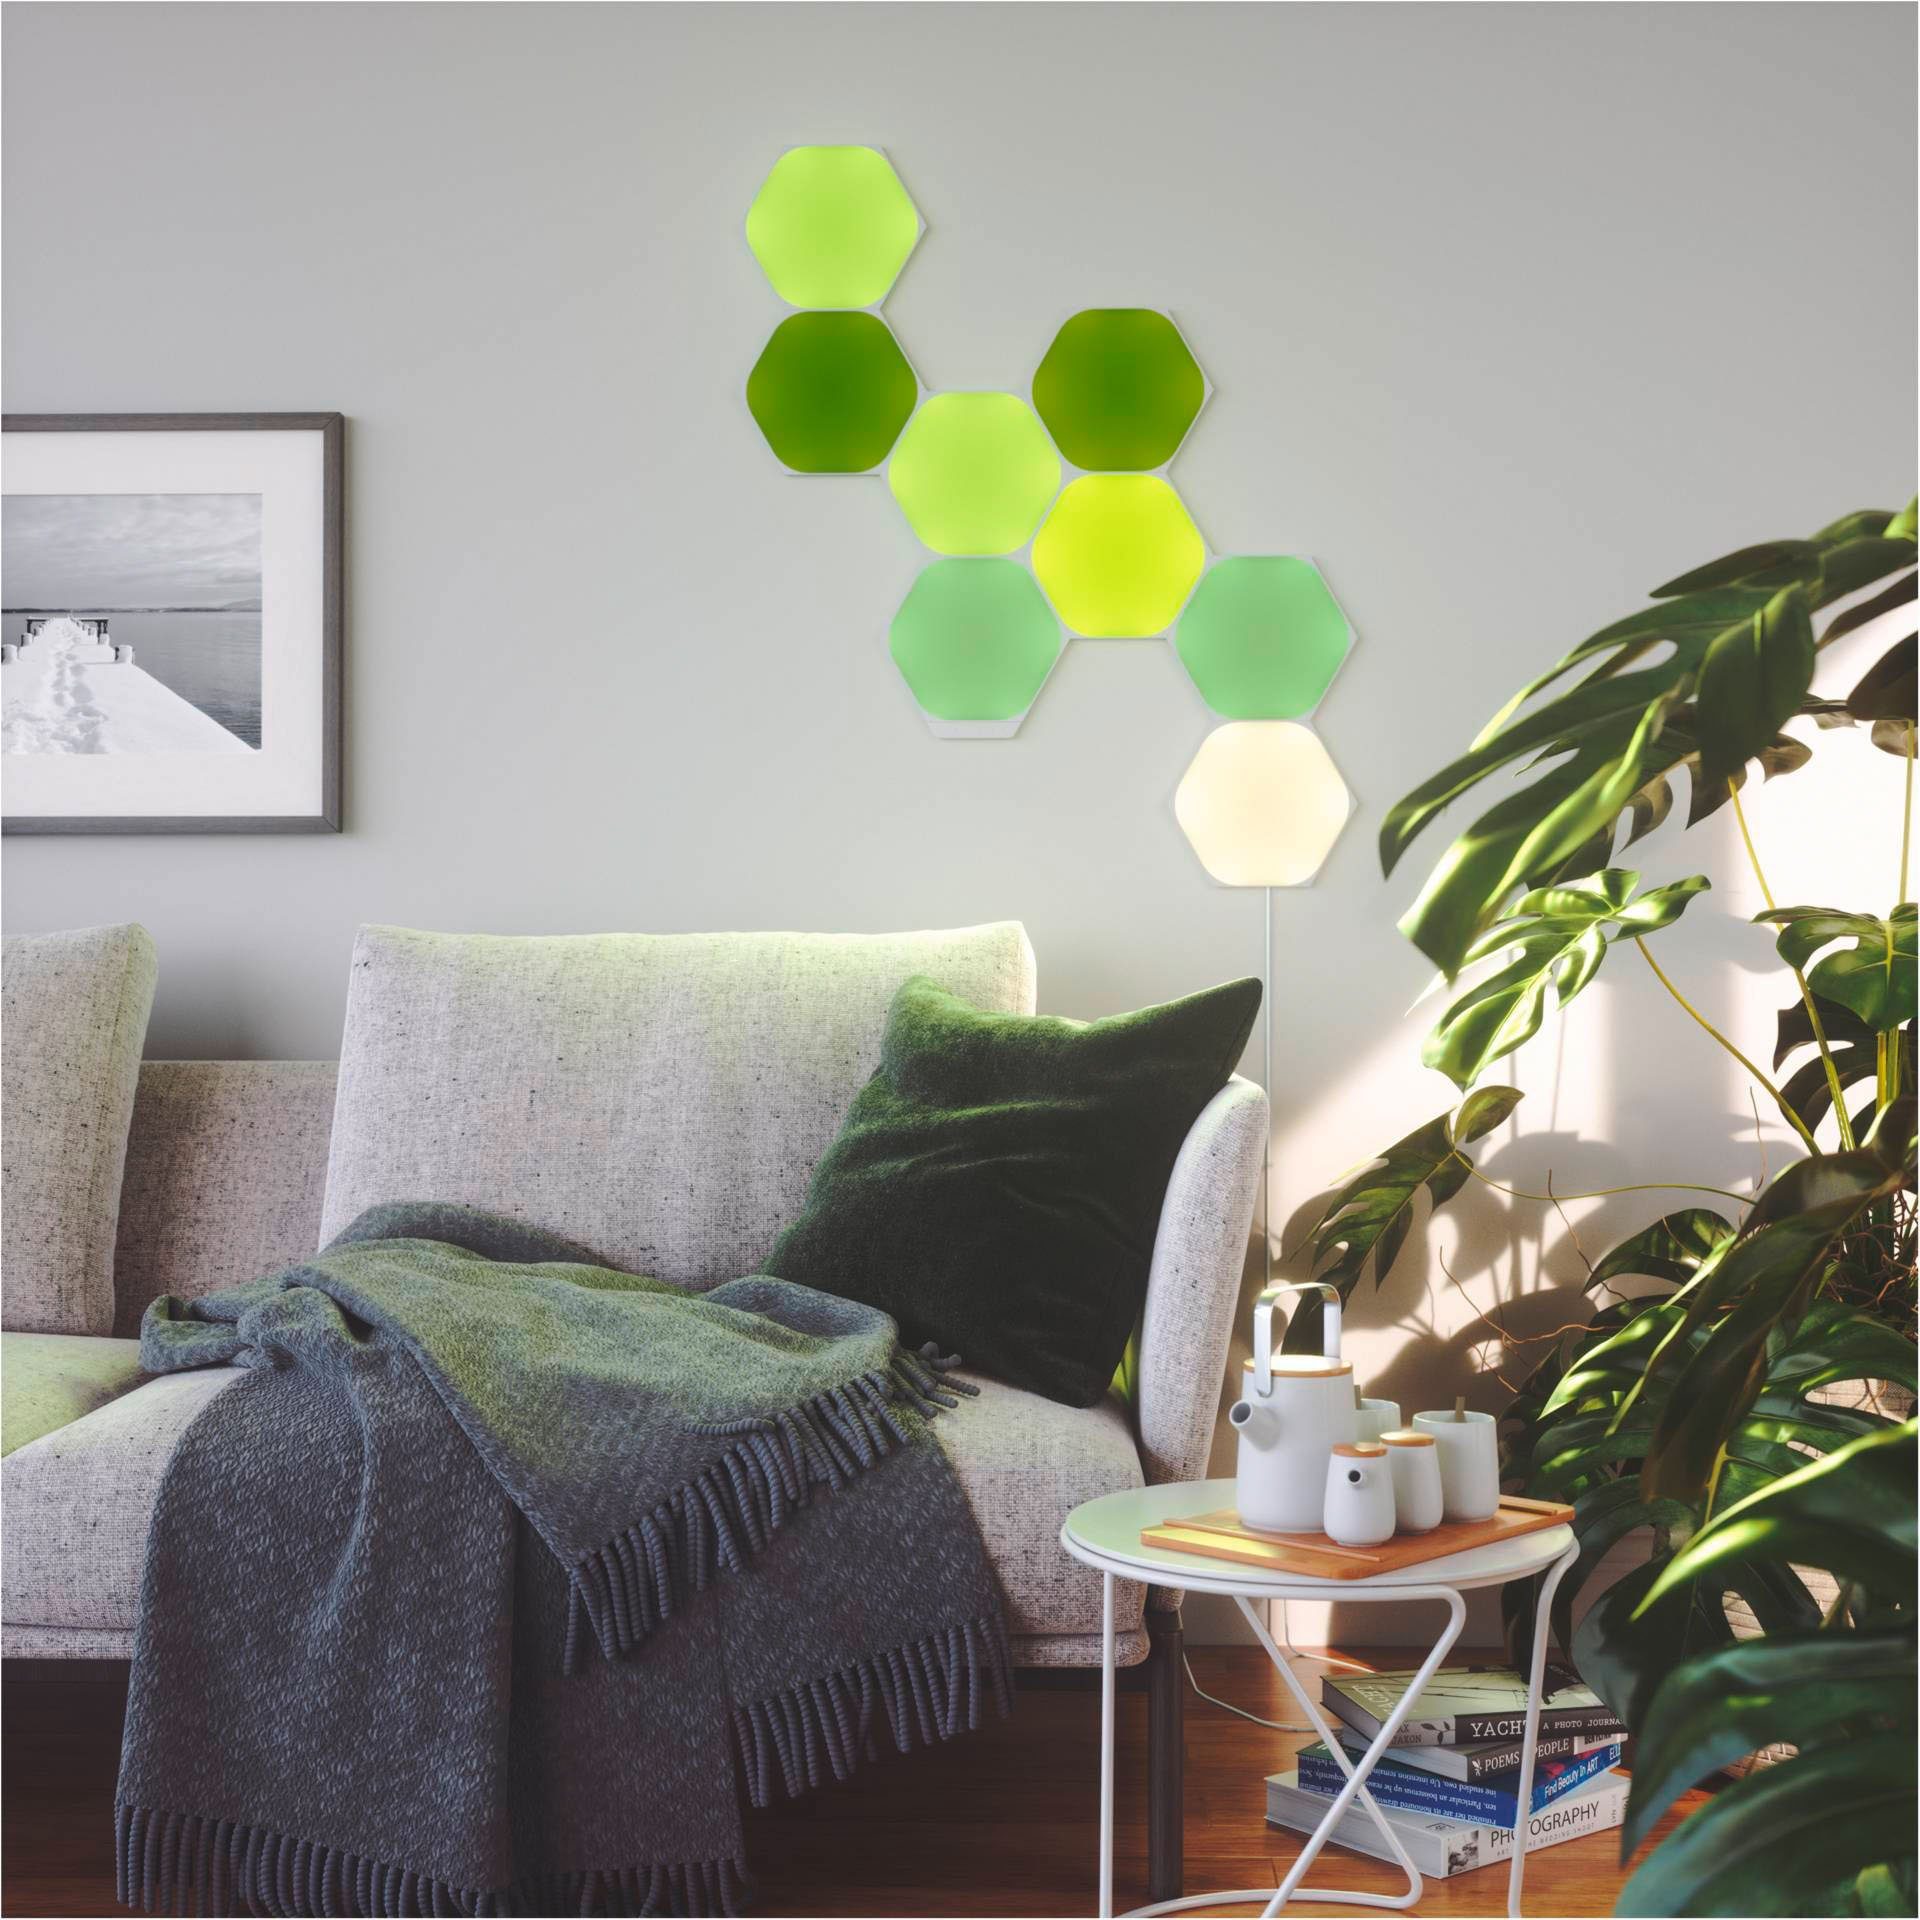 fest LED Hexagons, nanoleaf Farbwechsler integriert, Panel Shapes LED Dimmfunktion,